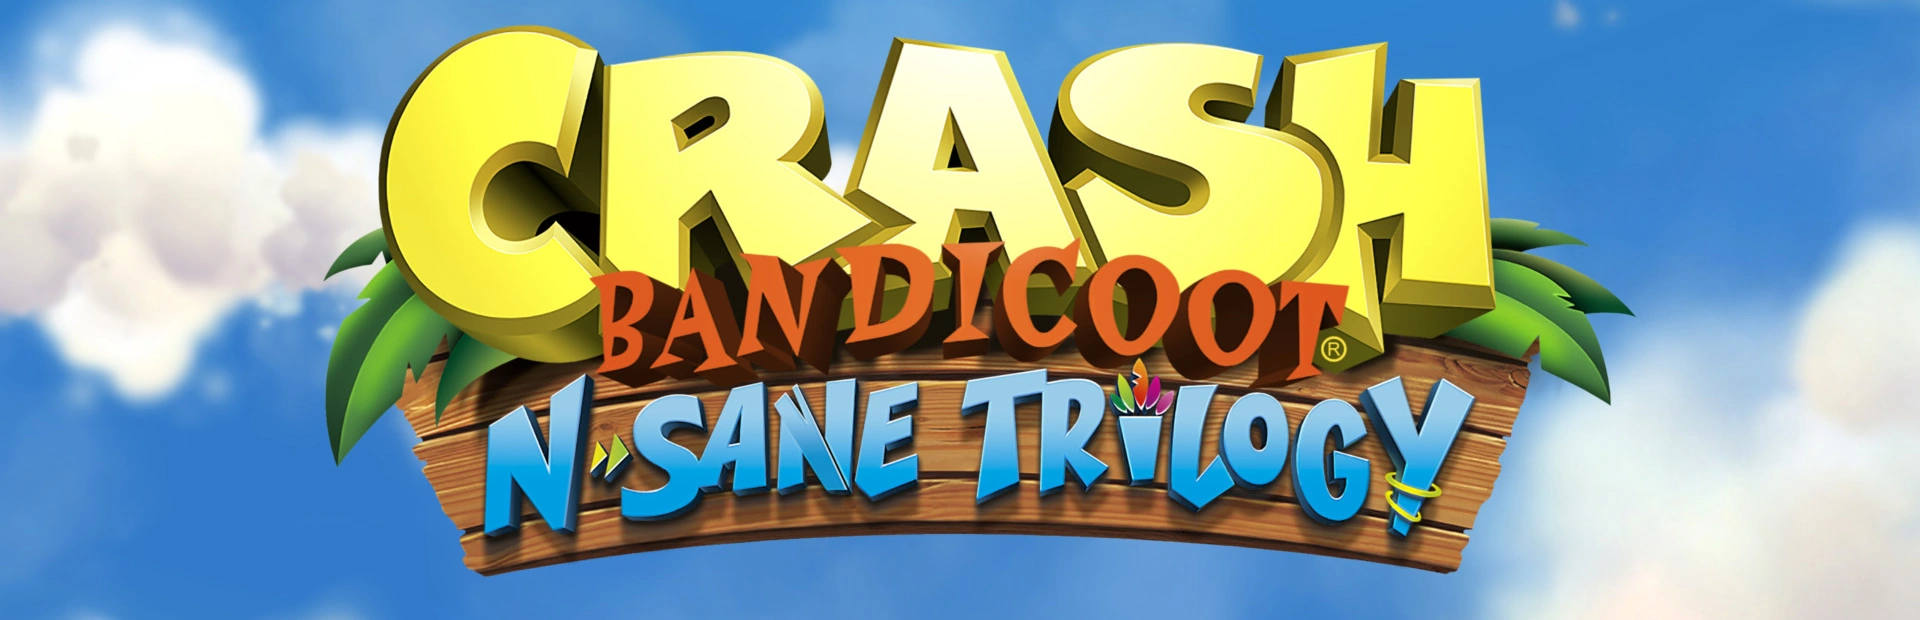 دانلود بازی Crash Bandicoot N Sane Triology برای PC| گیمباتو